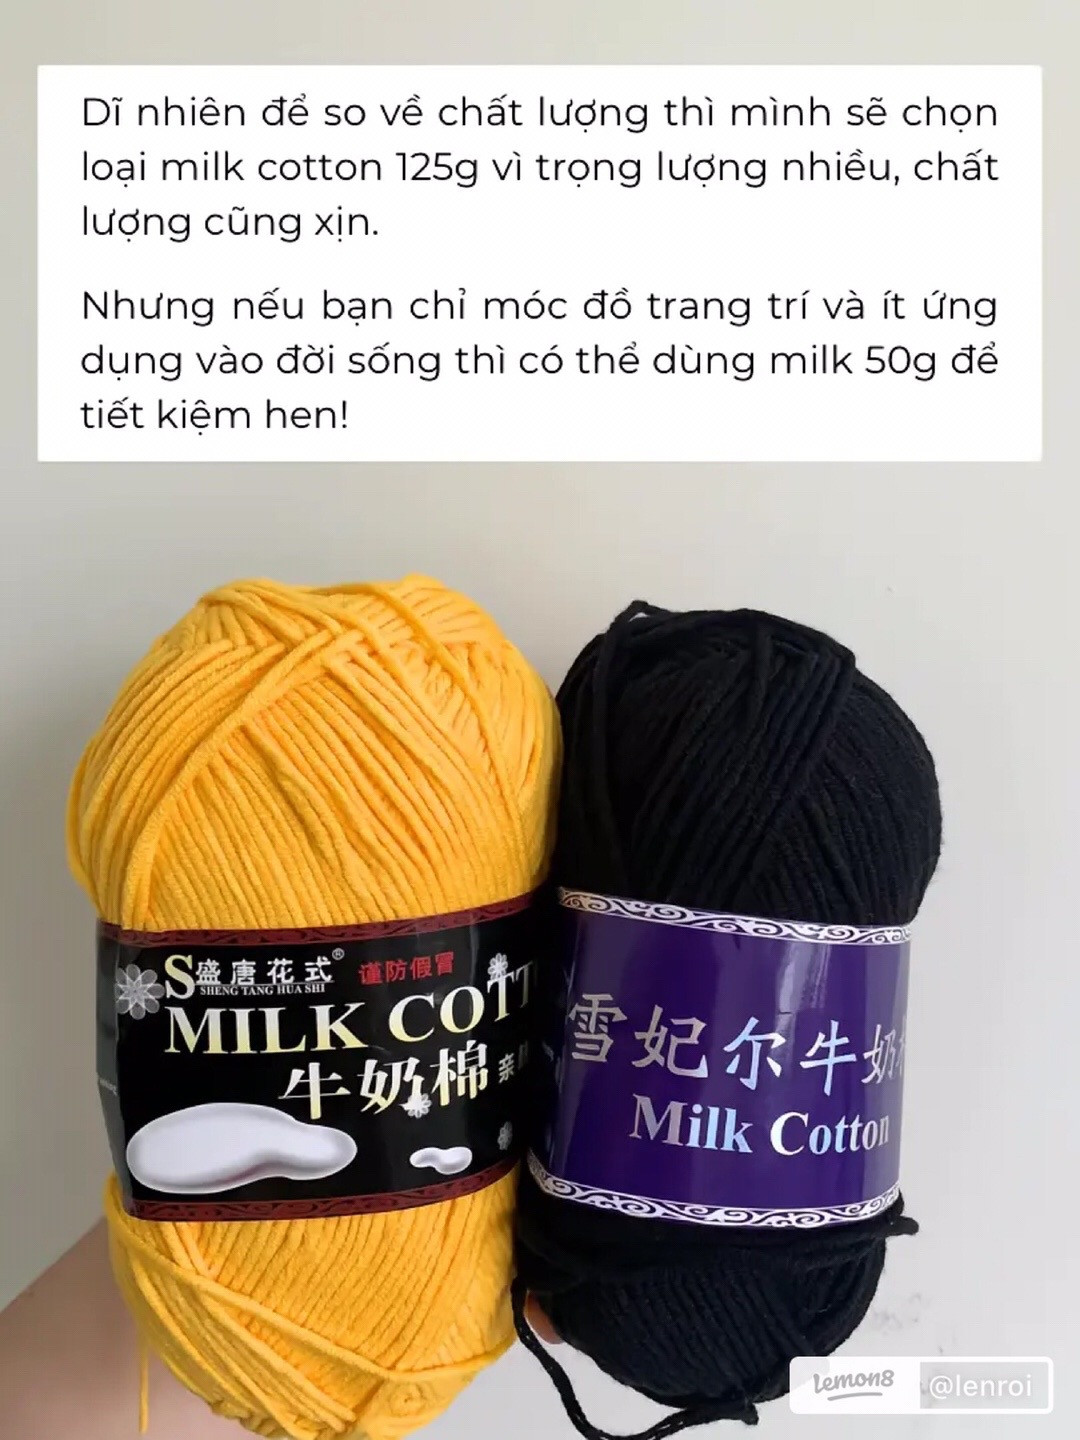 Có bao nhiêu loại len milk cotton